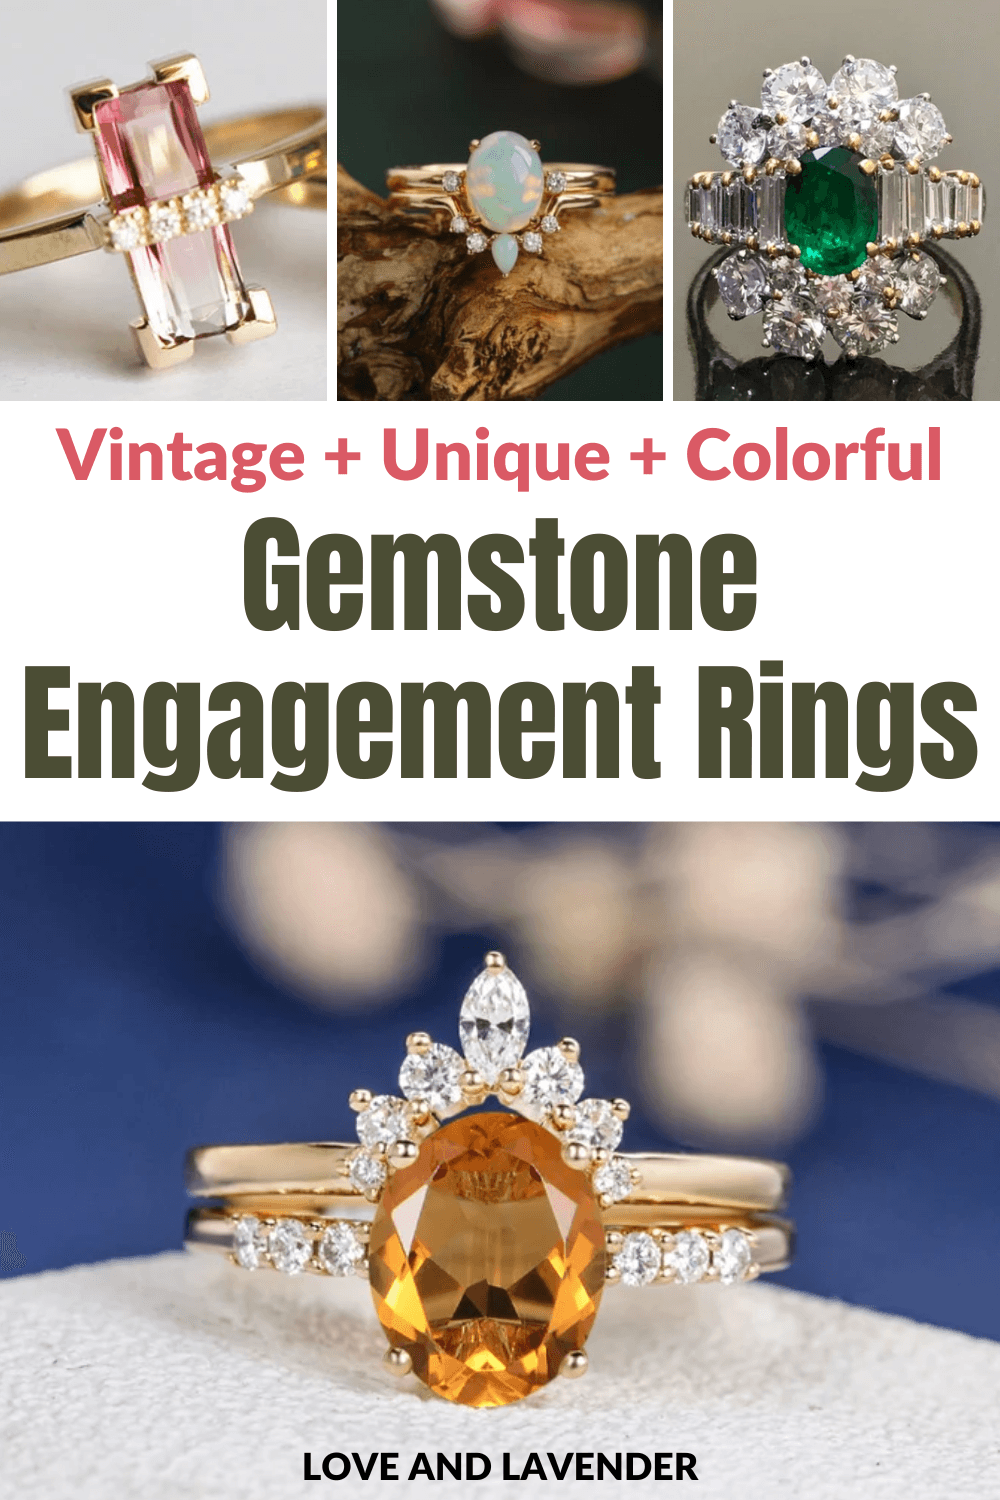 15 Vintage + Unique + Colorful Gemstone Engagement Rings